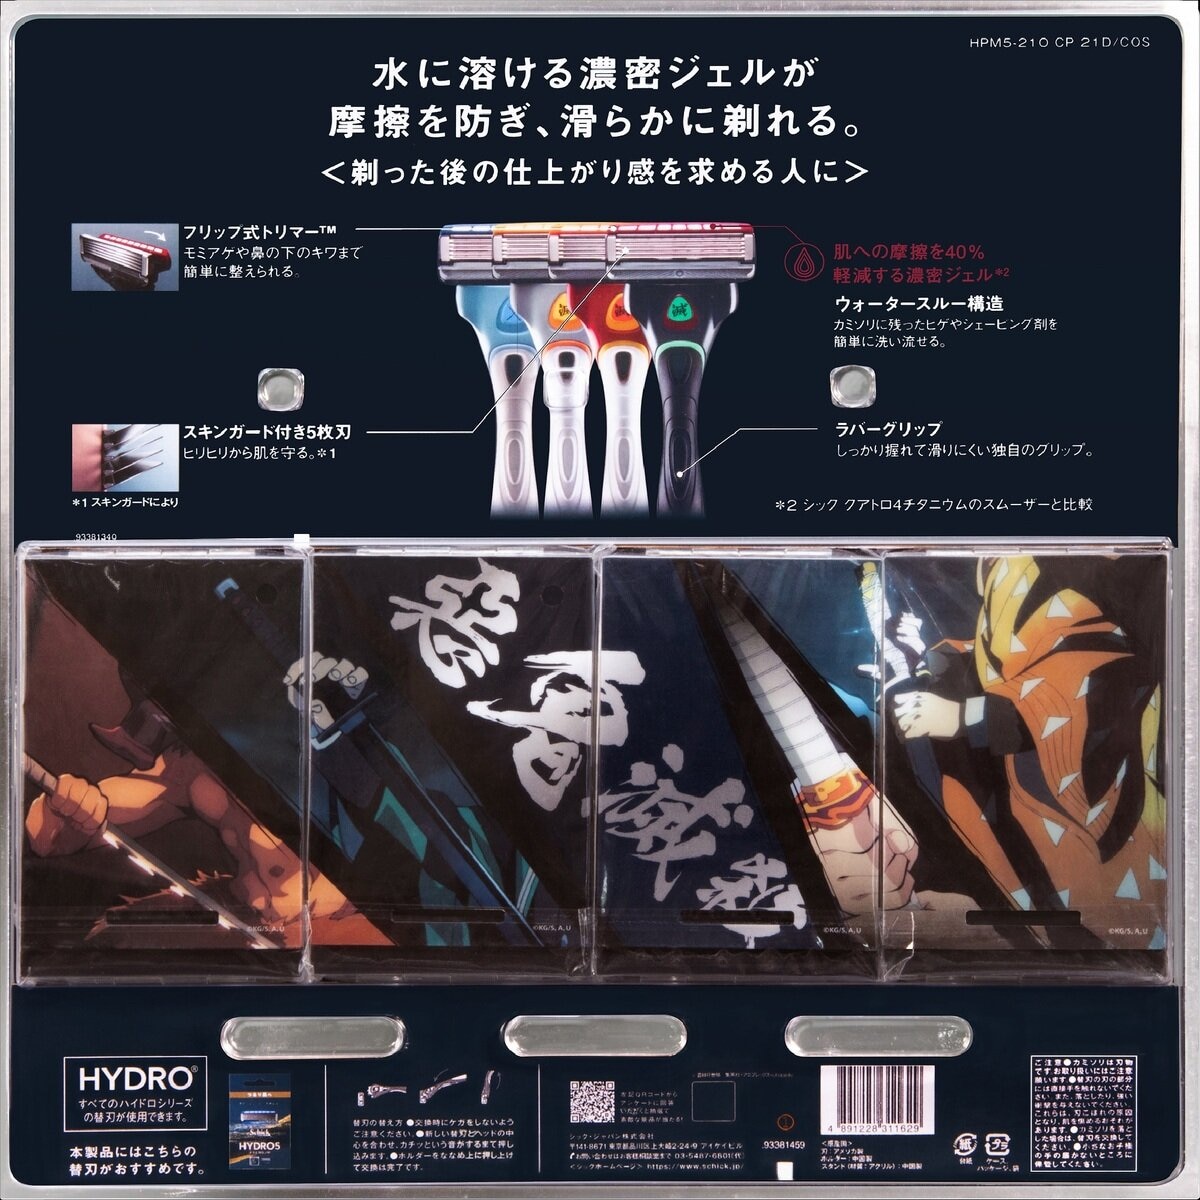 Schick(シック) 鬼滅の刃 ハイドロ5 プレミアムホルダー4種コンプリートパック | Costco Japan